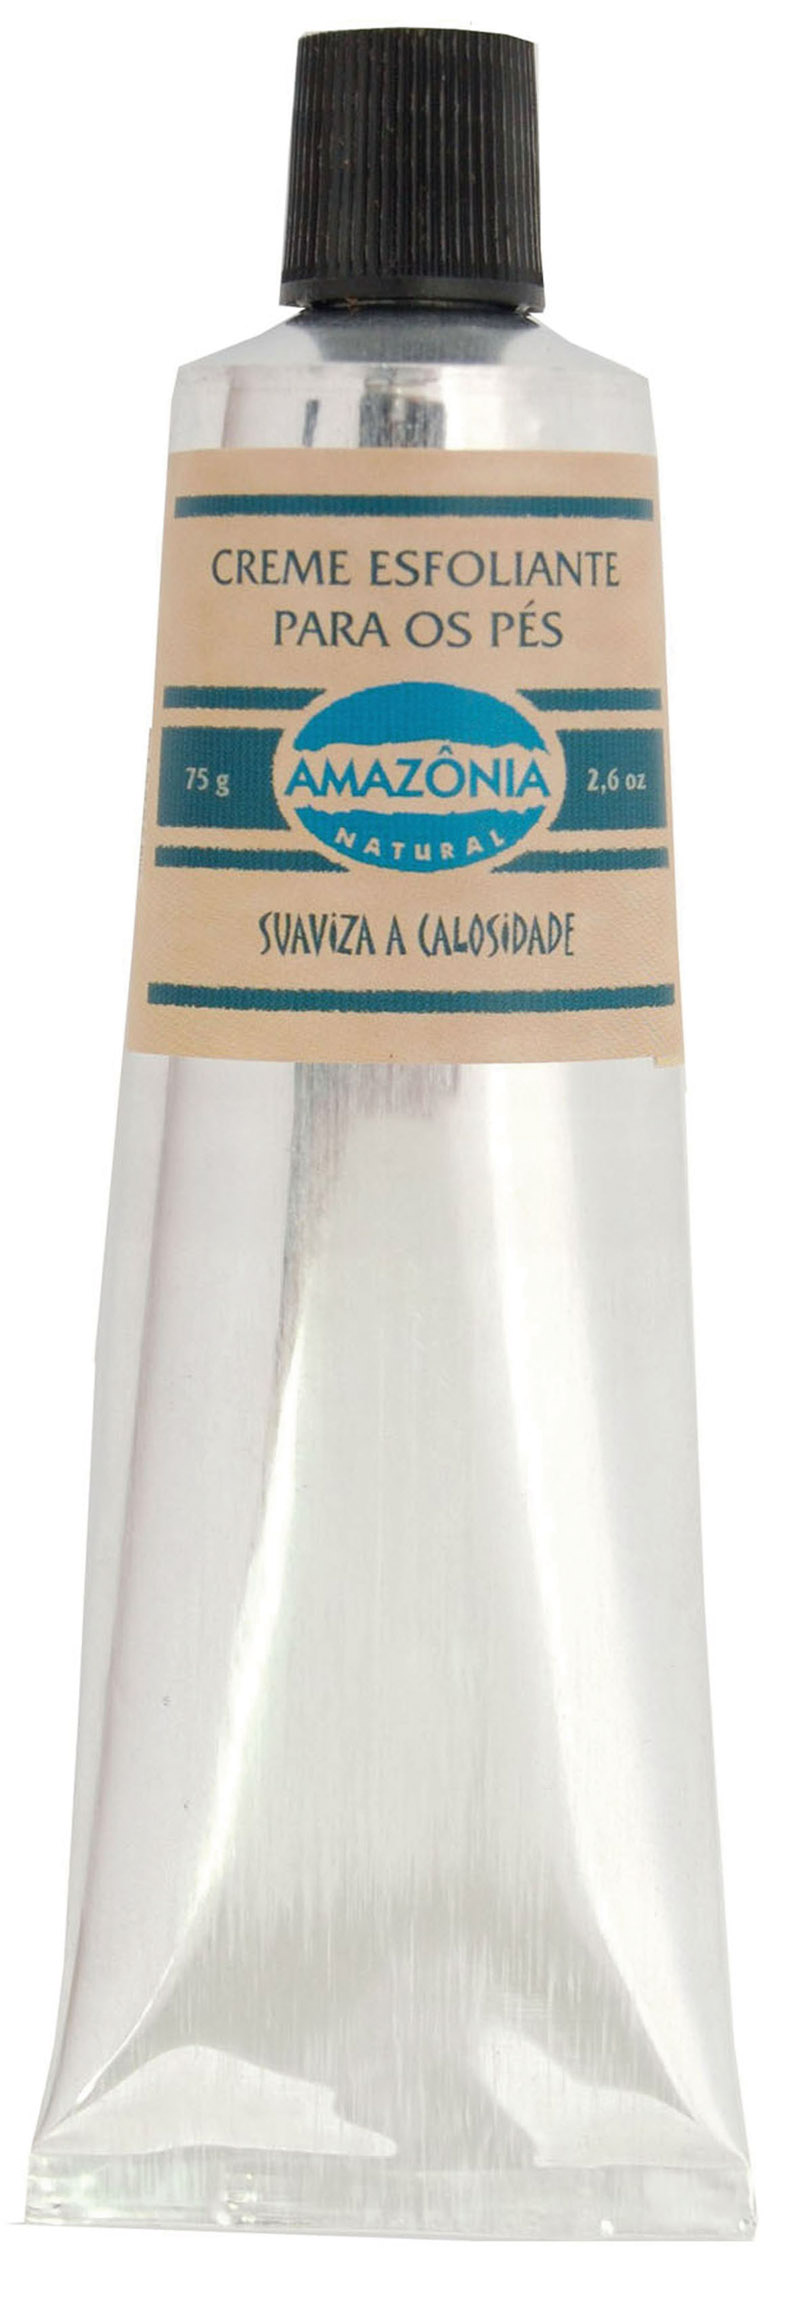 Amazônia Natural creme esfoliante para os pés, R$ 11: remove as células mortas, suaviza calosidades e prepara a pele para hidratação. Amazônia Natural 0800-0197366